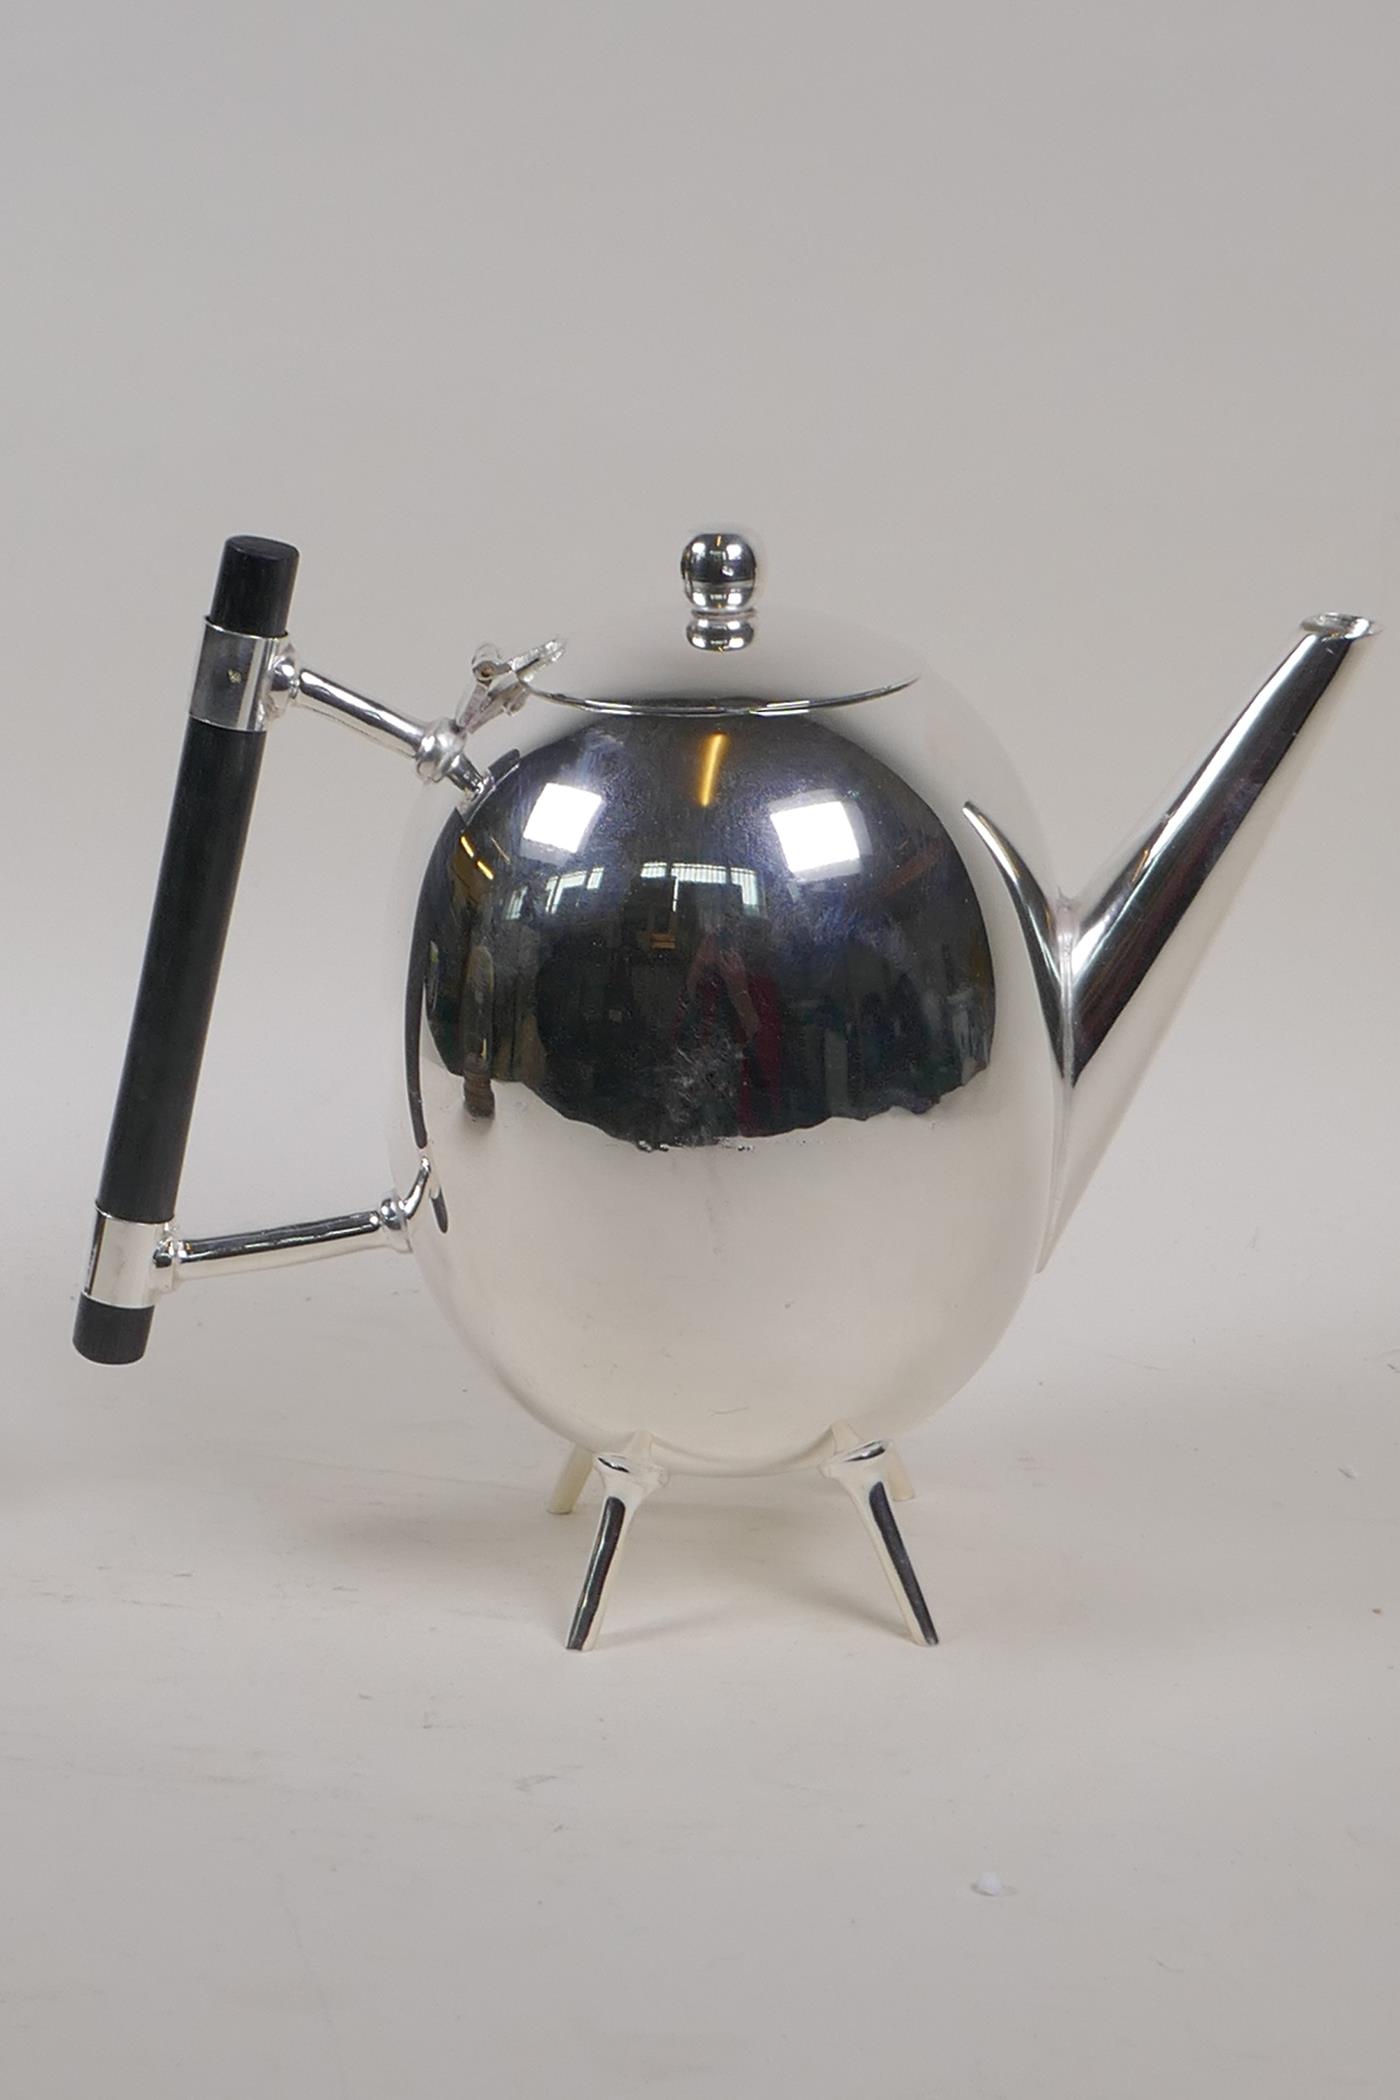 A Christopher Dresser design silver plated teapot, 7½" high